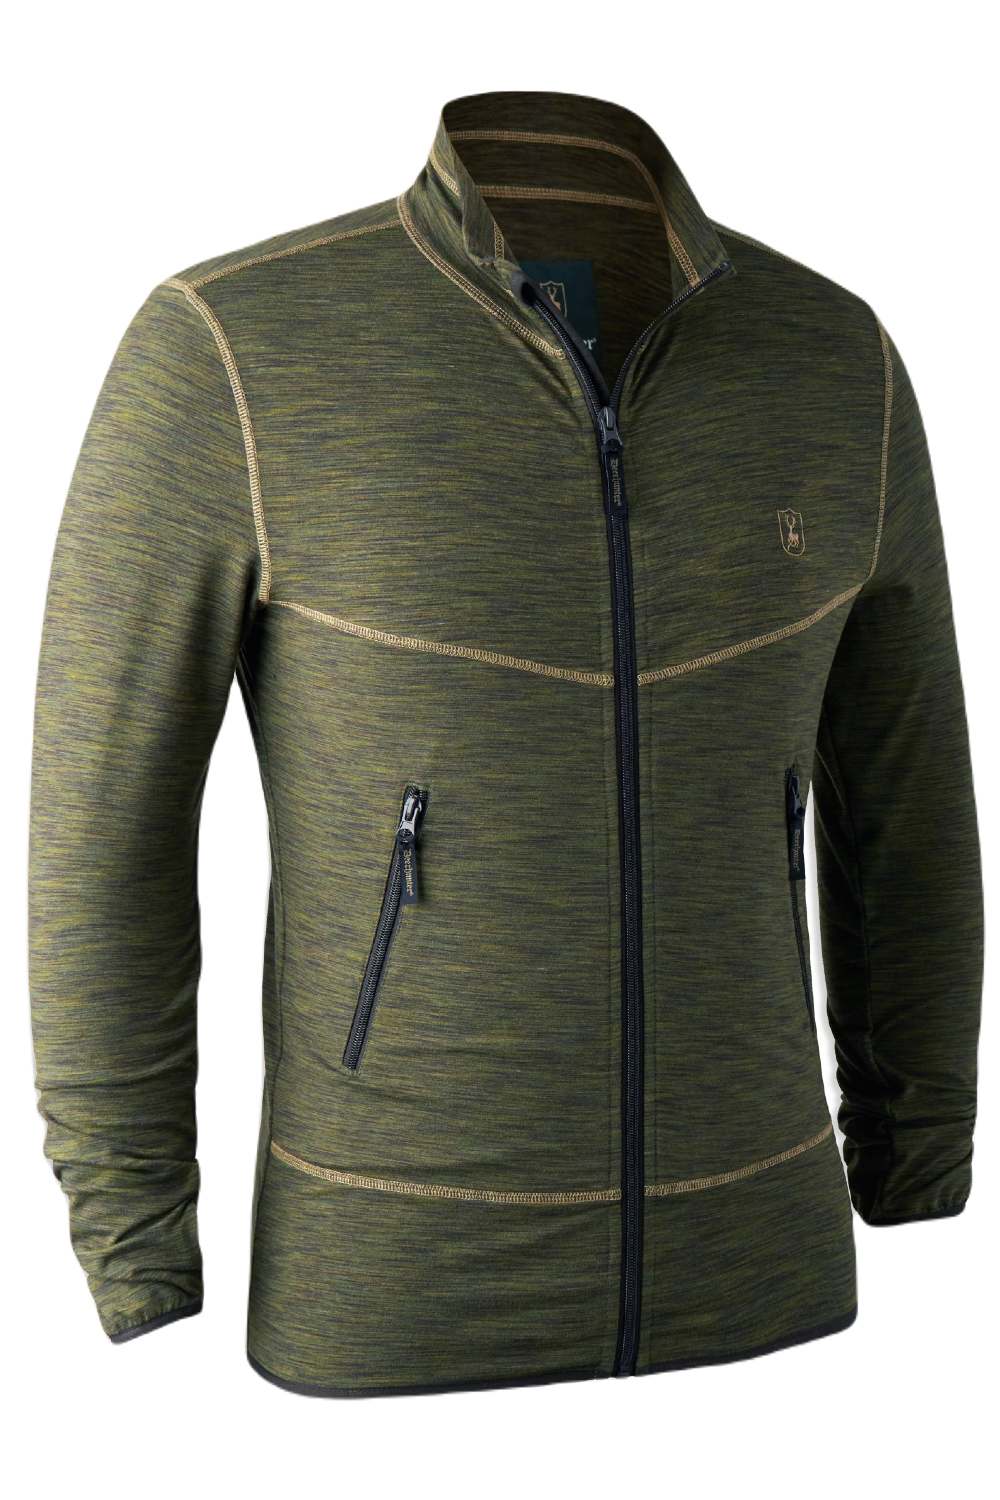 Deerhunter Norden Fleece Jacket in Green Melange 